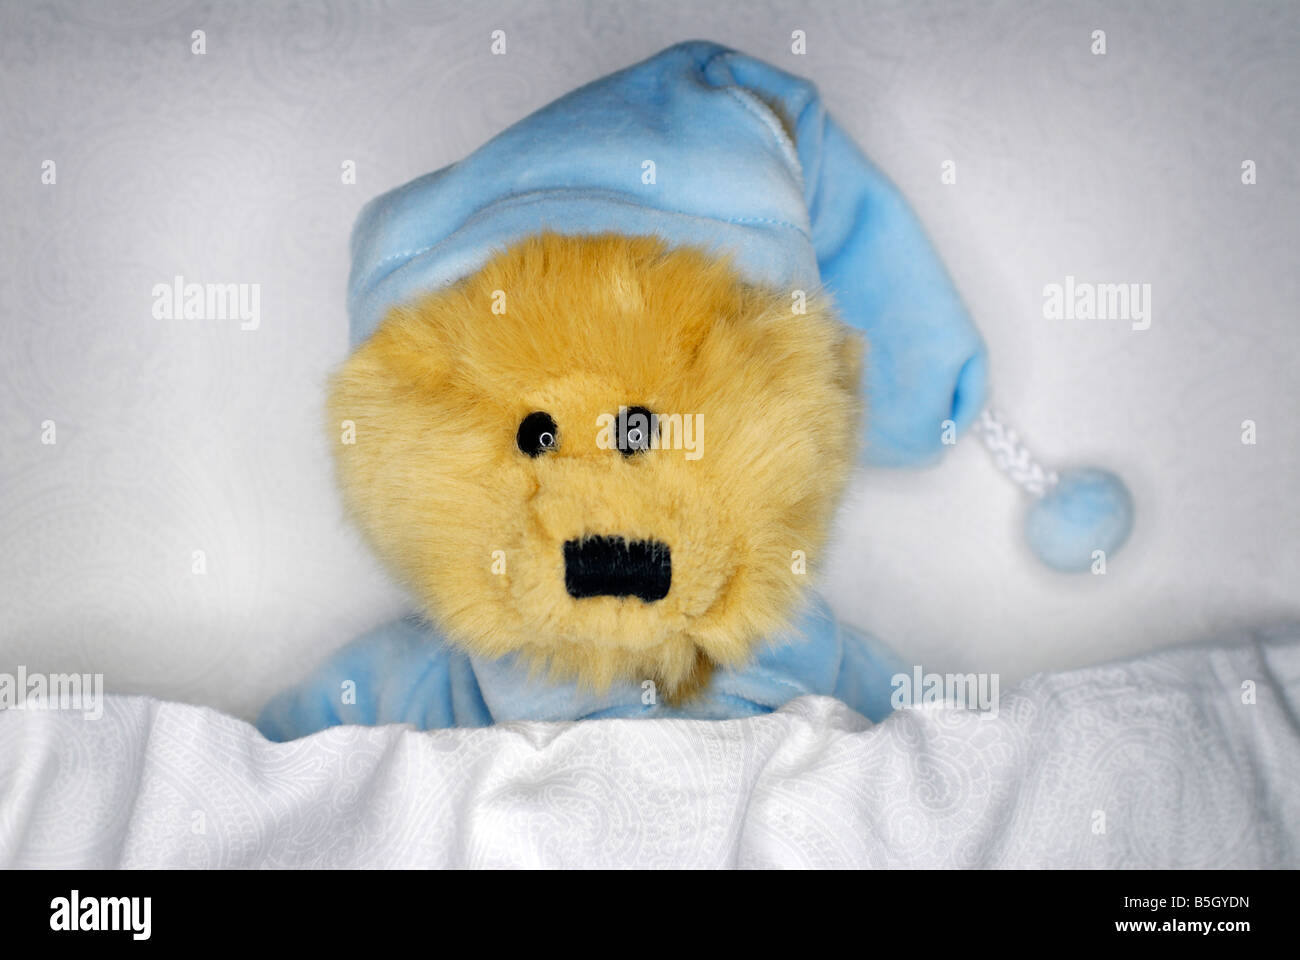 Teddybär im Bett Stockfoto